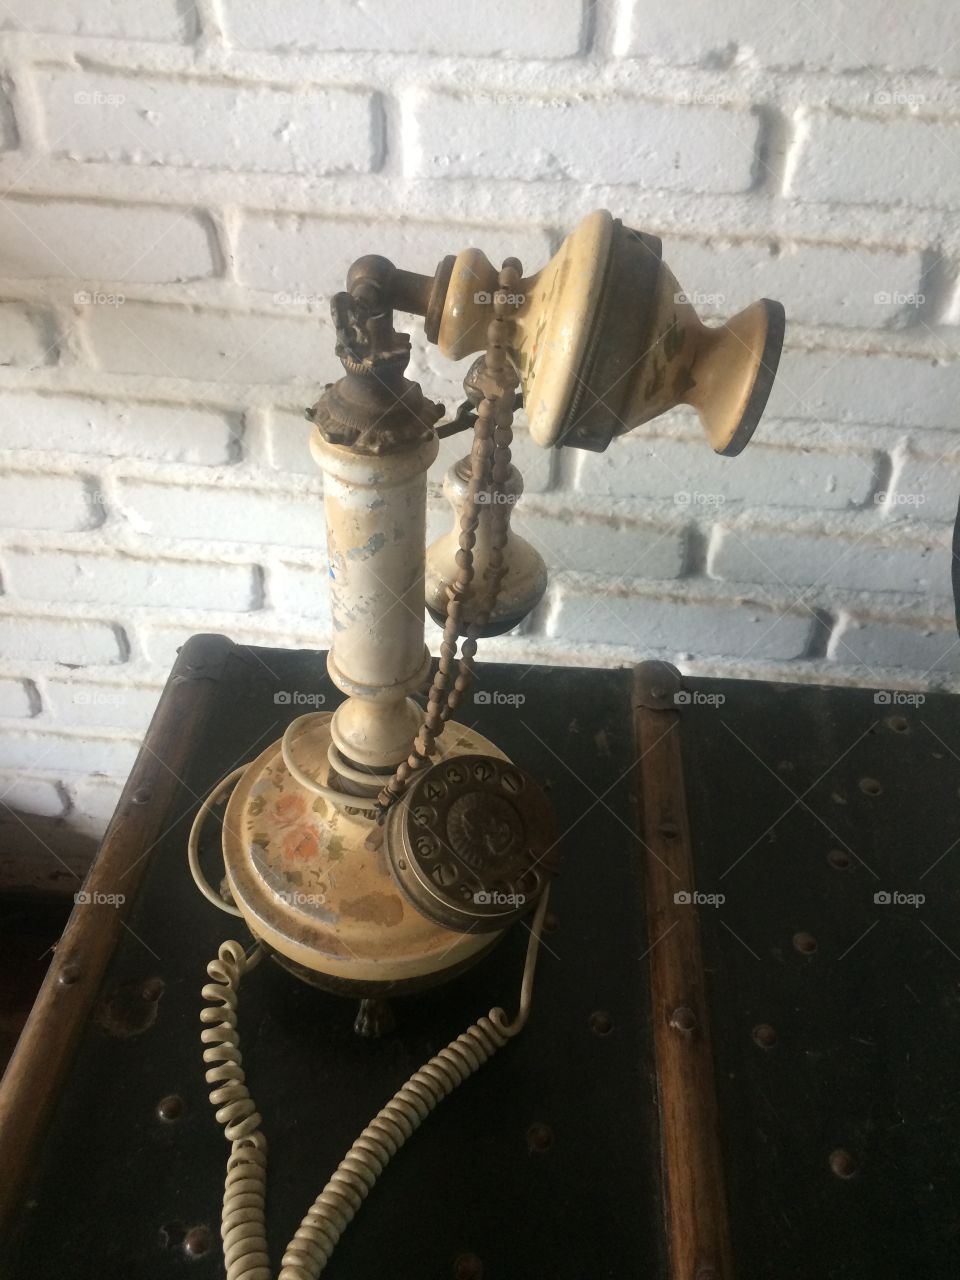 Phone antigo 